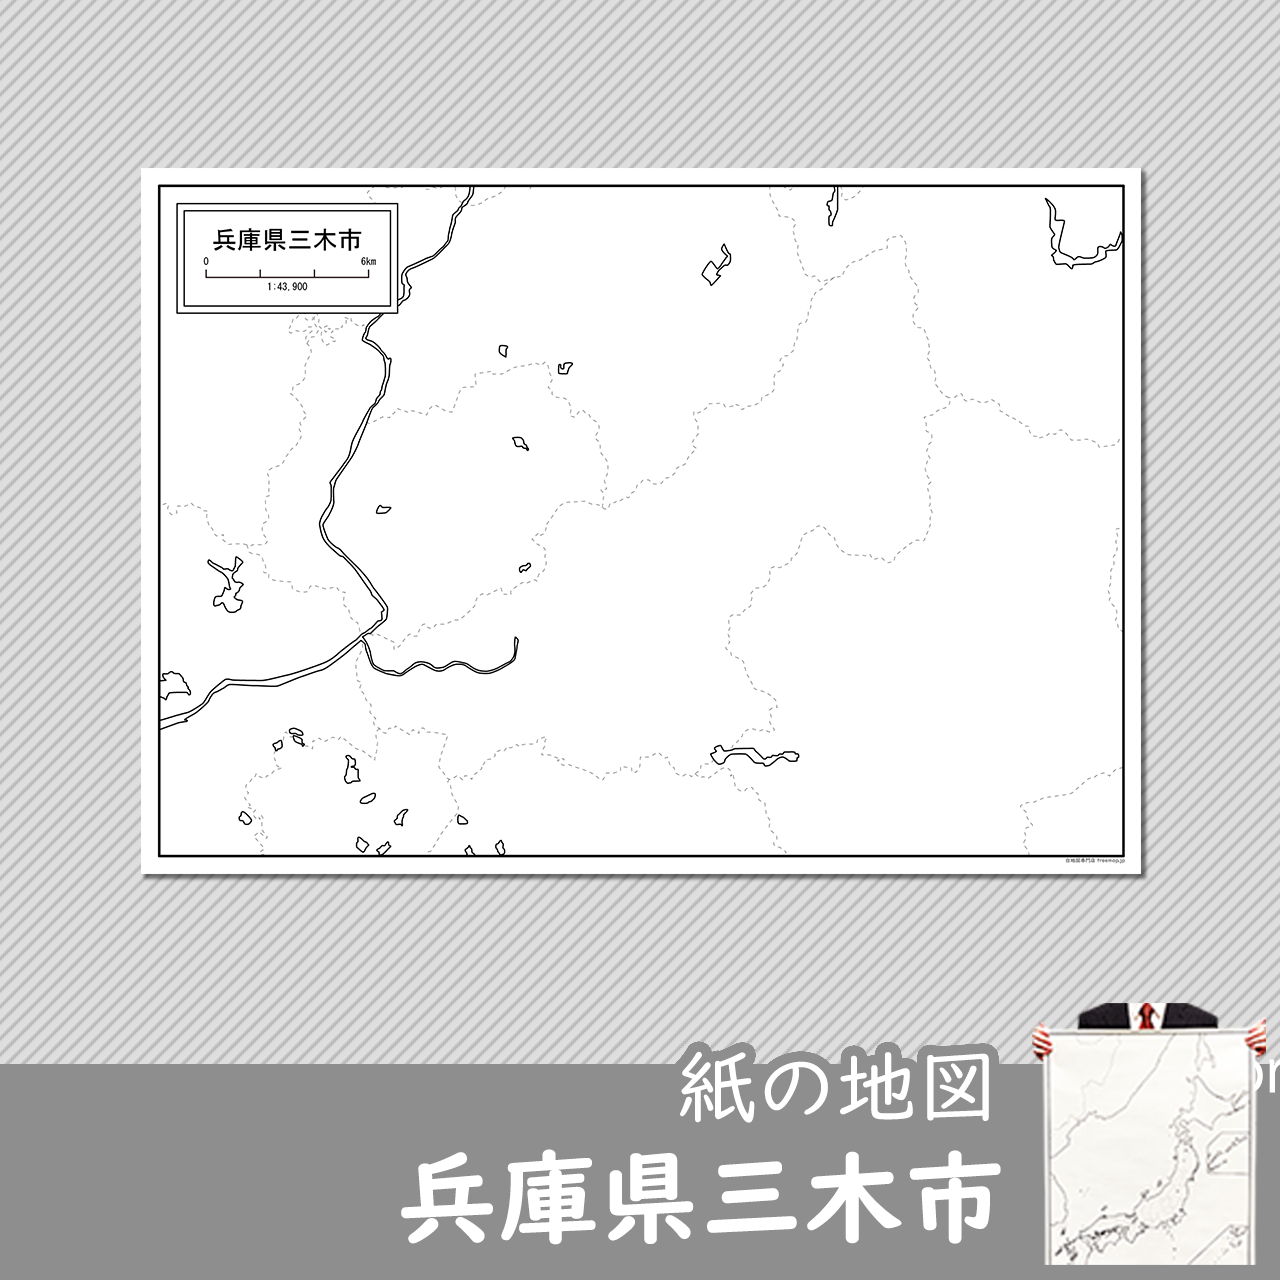 三木市の紙の白地図のサムネイル